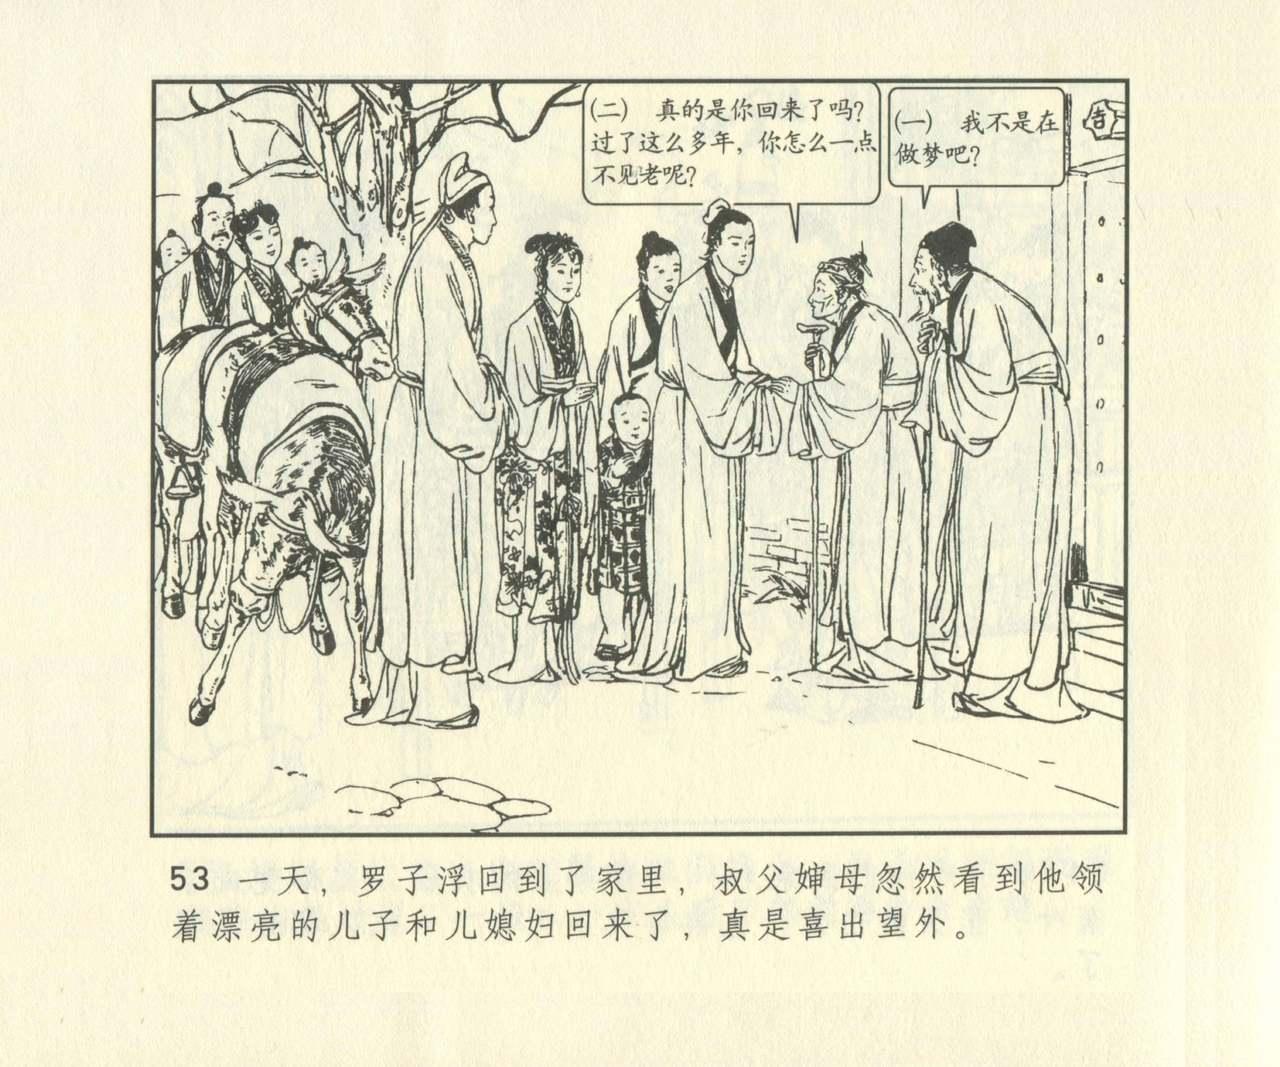 聊斋志异 张玮等绘 天津人民美术出版社 卷二十一 ~ 三十 669